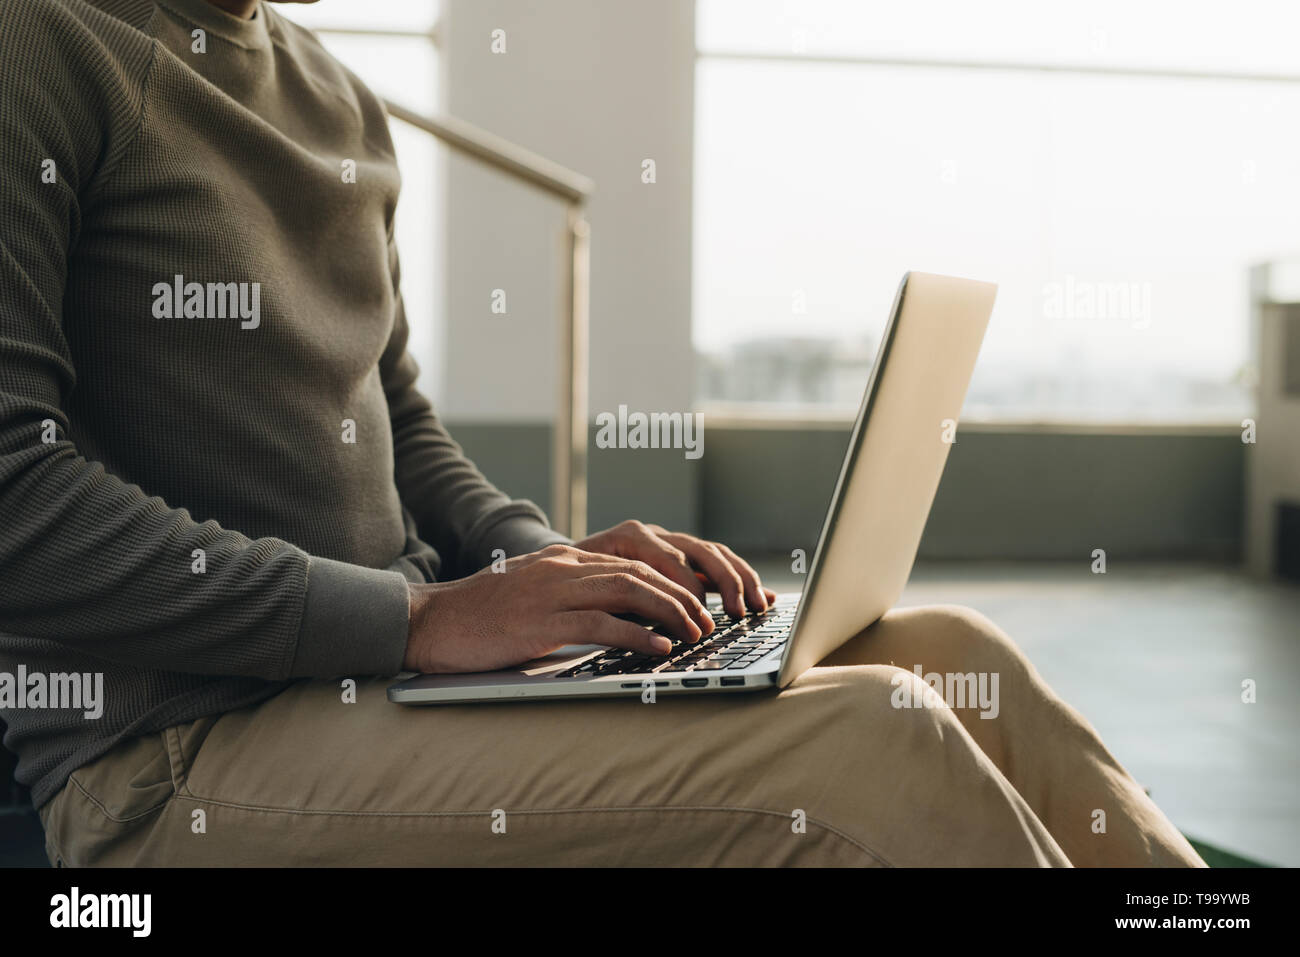 Un homme assis à l'ordinateur portable sur ses genoux. Banque D'Images